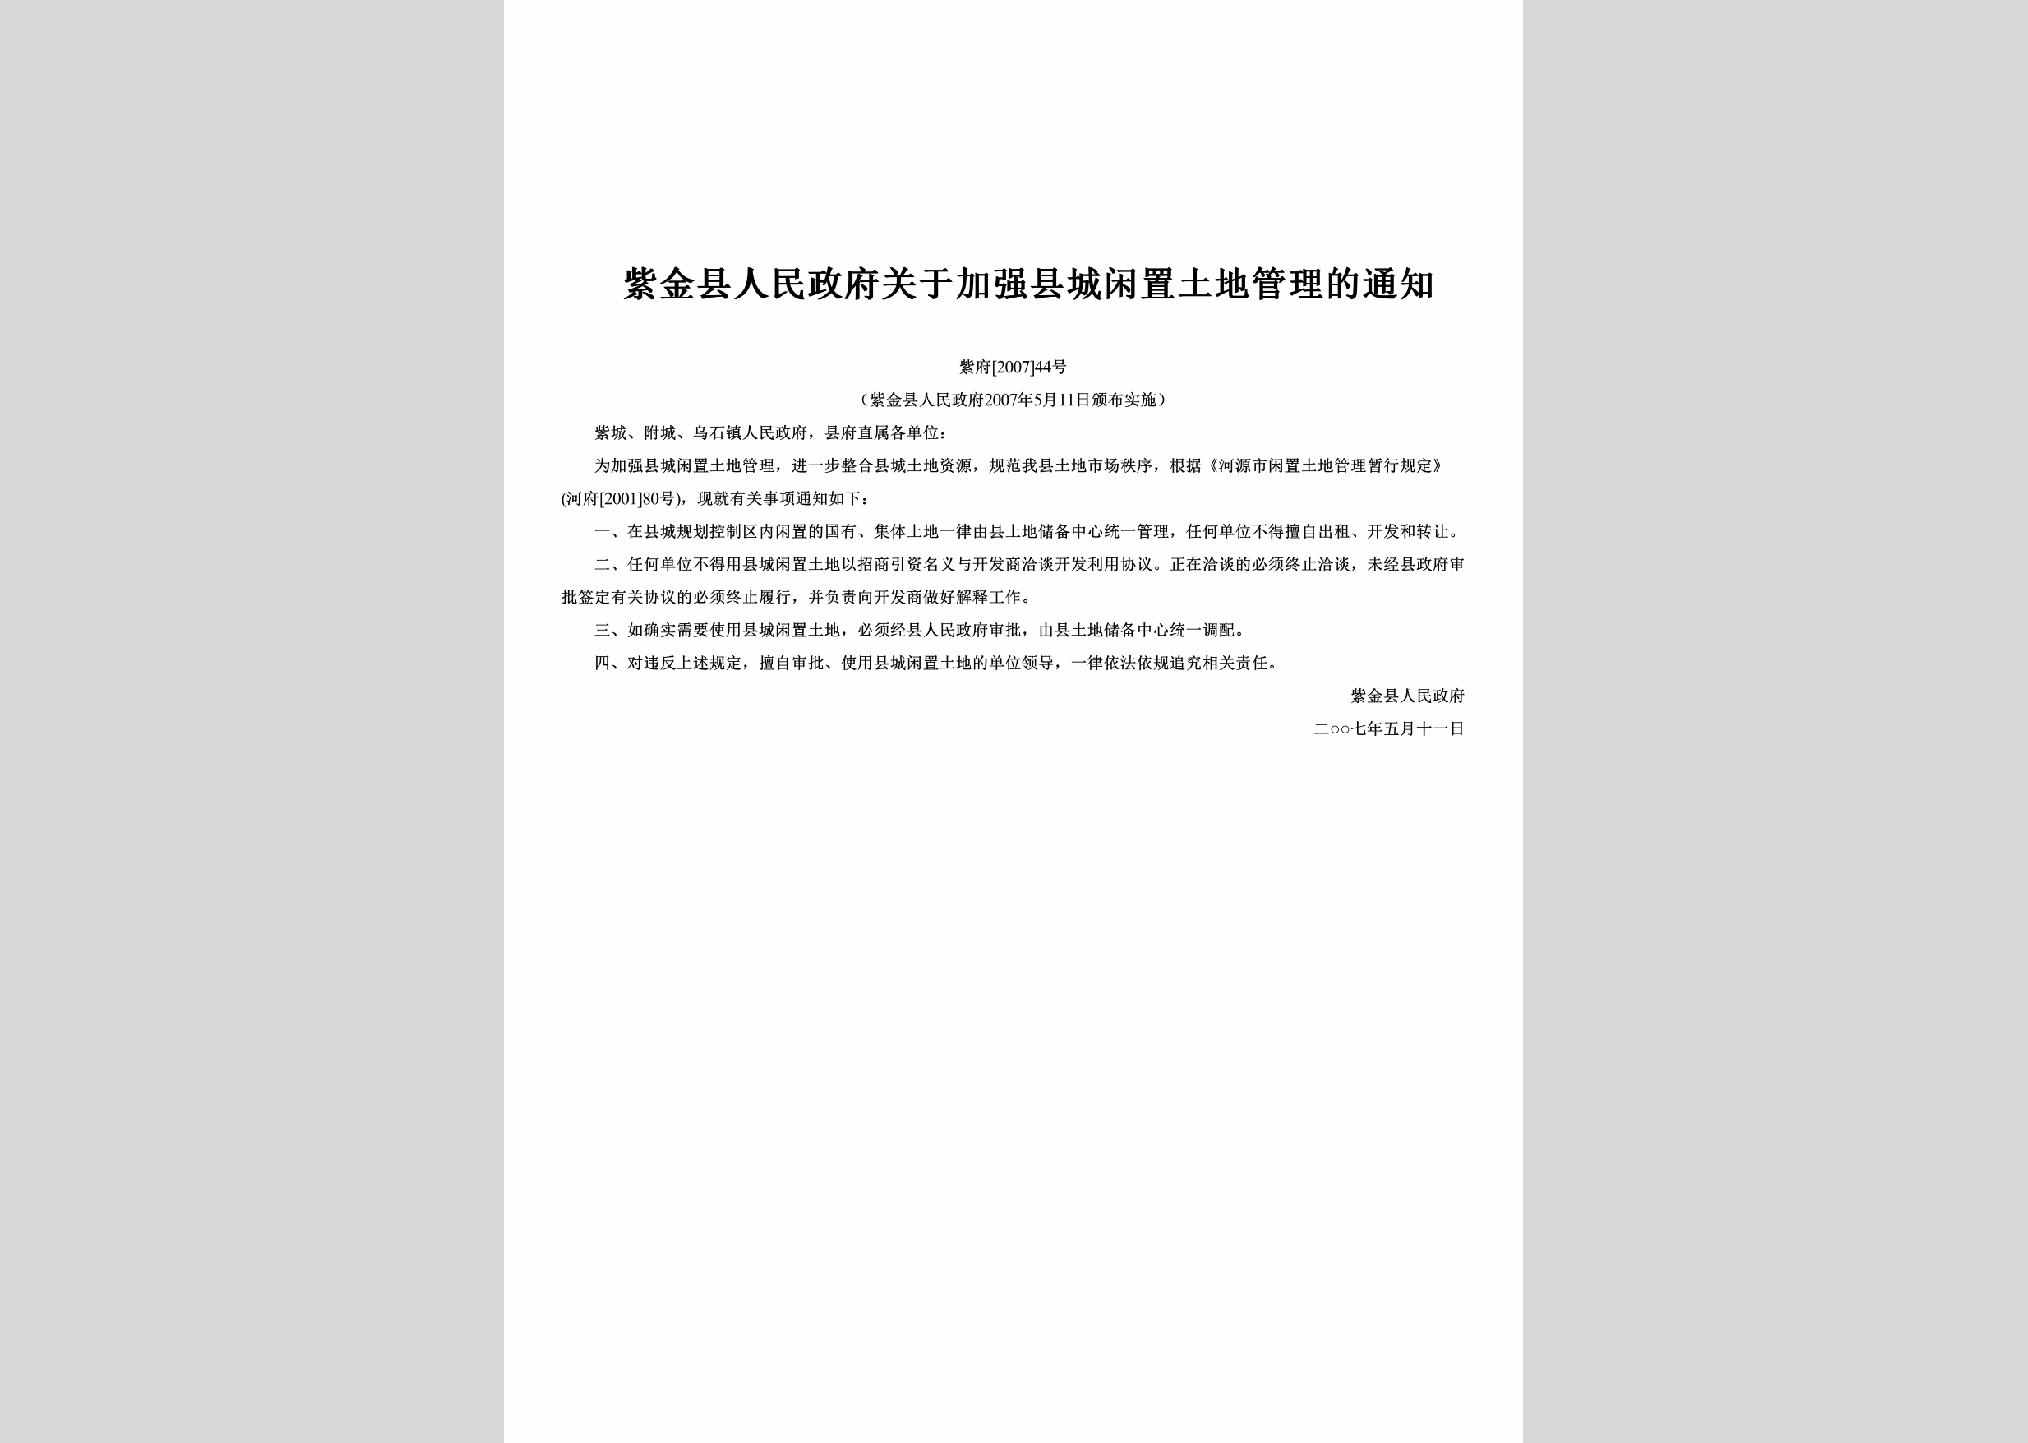 紫府[2007]44号：关于加强县城闲置土地管理的通知